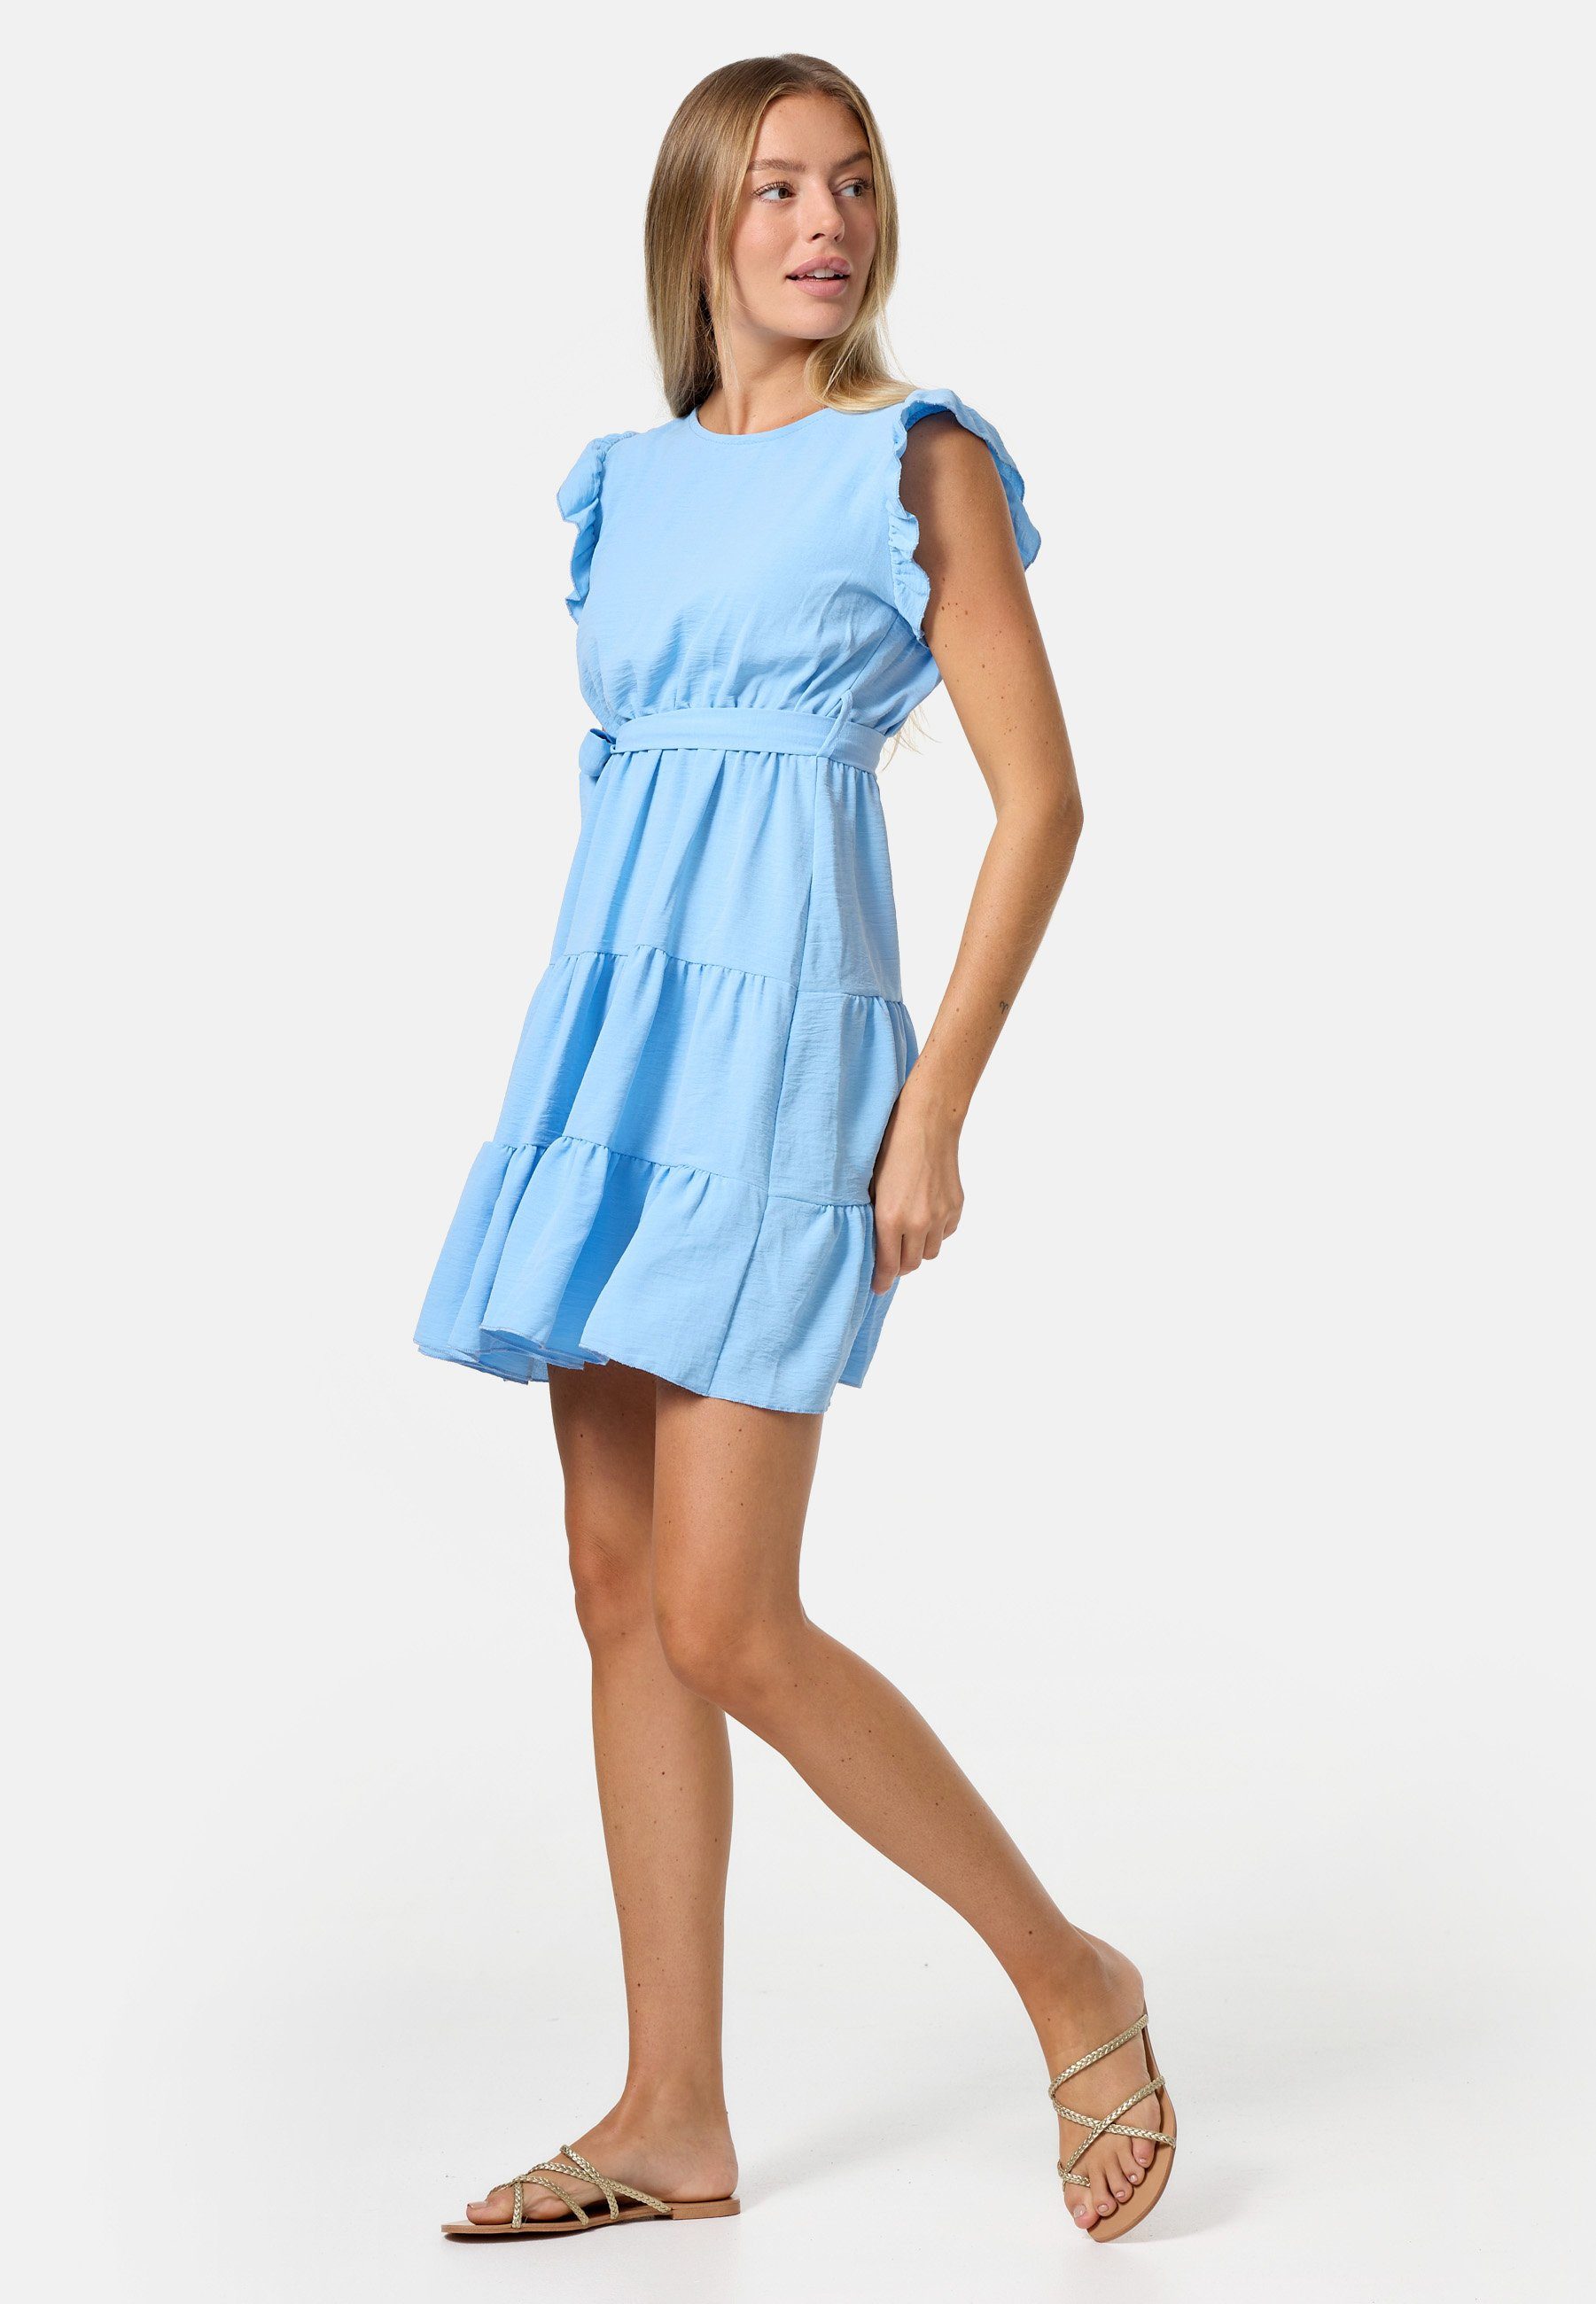 PM SELECTED Minikleid PM-27 (Sommerkleid Midi Kleid mit Rüschen in Einheitsgröße) Blau